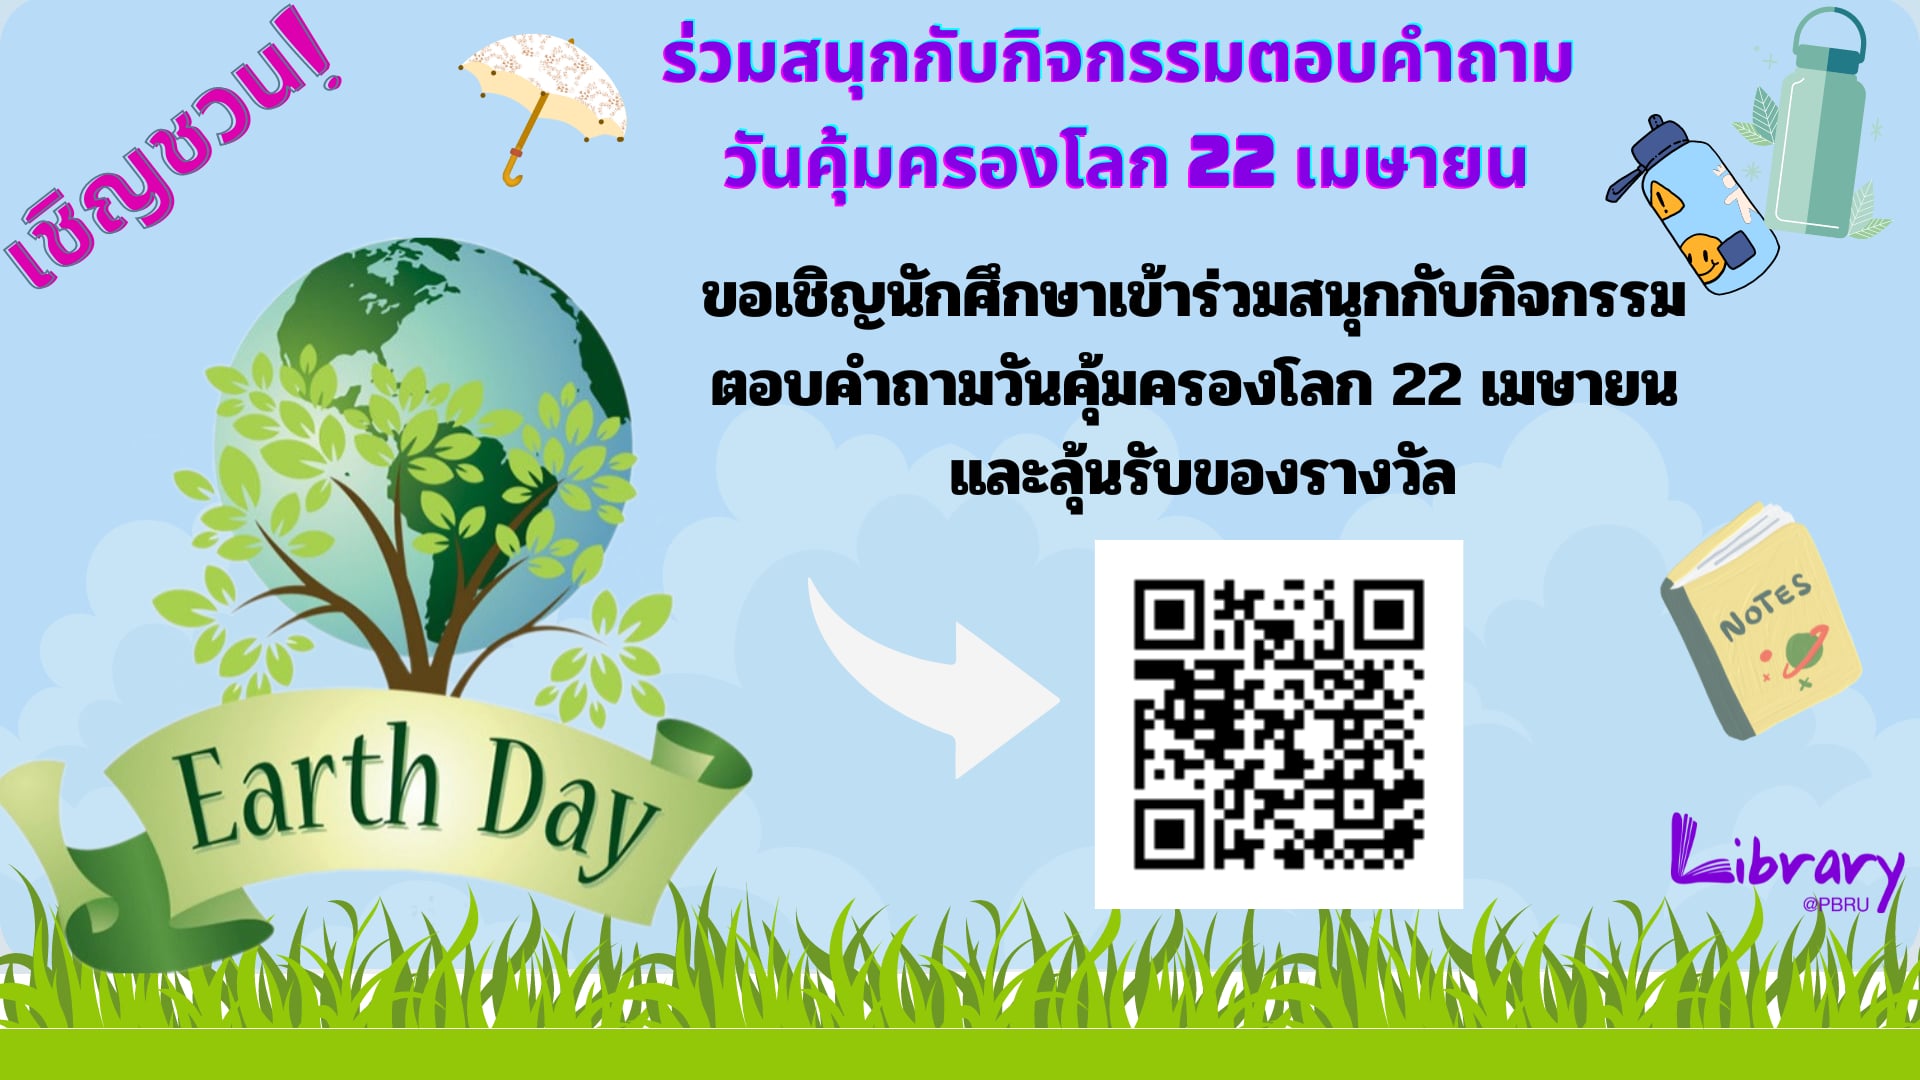 สำนักวิทยบริการฯ มหาวิทยาลัยราชภัฏเพชรบุรี ขอเชิญชวน นักเรียนนักศึกษา อาจารย์ เจ้าหน้าที่ และประชาชนทั่วไป ร่วมกิจกรรม ตอบคำถามชิงรางวัล "ขวดน้ำรักษ์โลก" เนื่องใน "วันที่ 22 เมษายน วันคุ้มครองโลก (Earth Day)" 